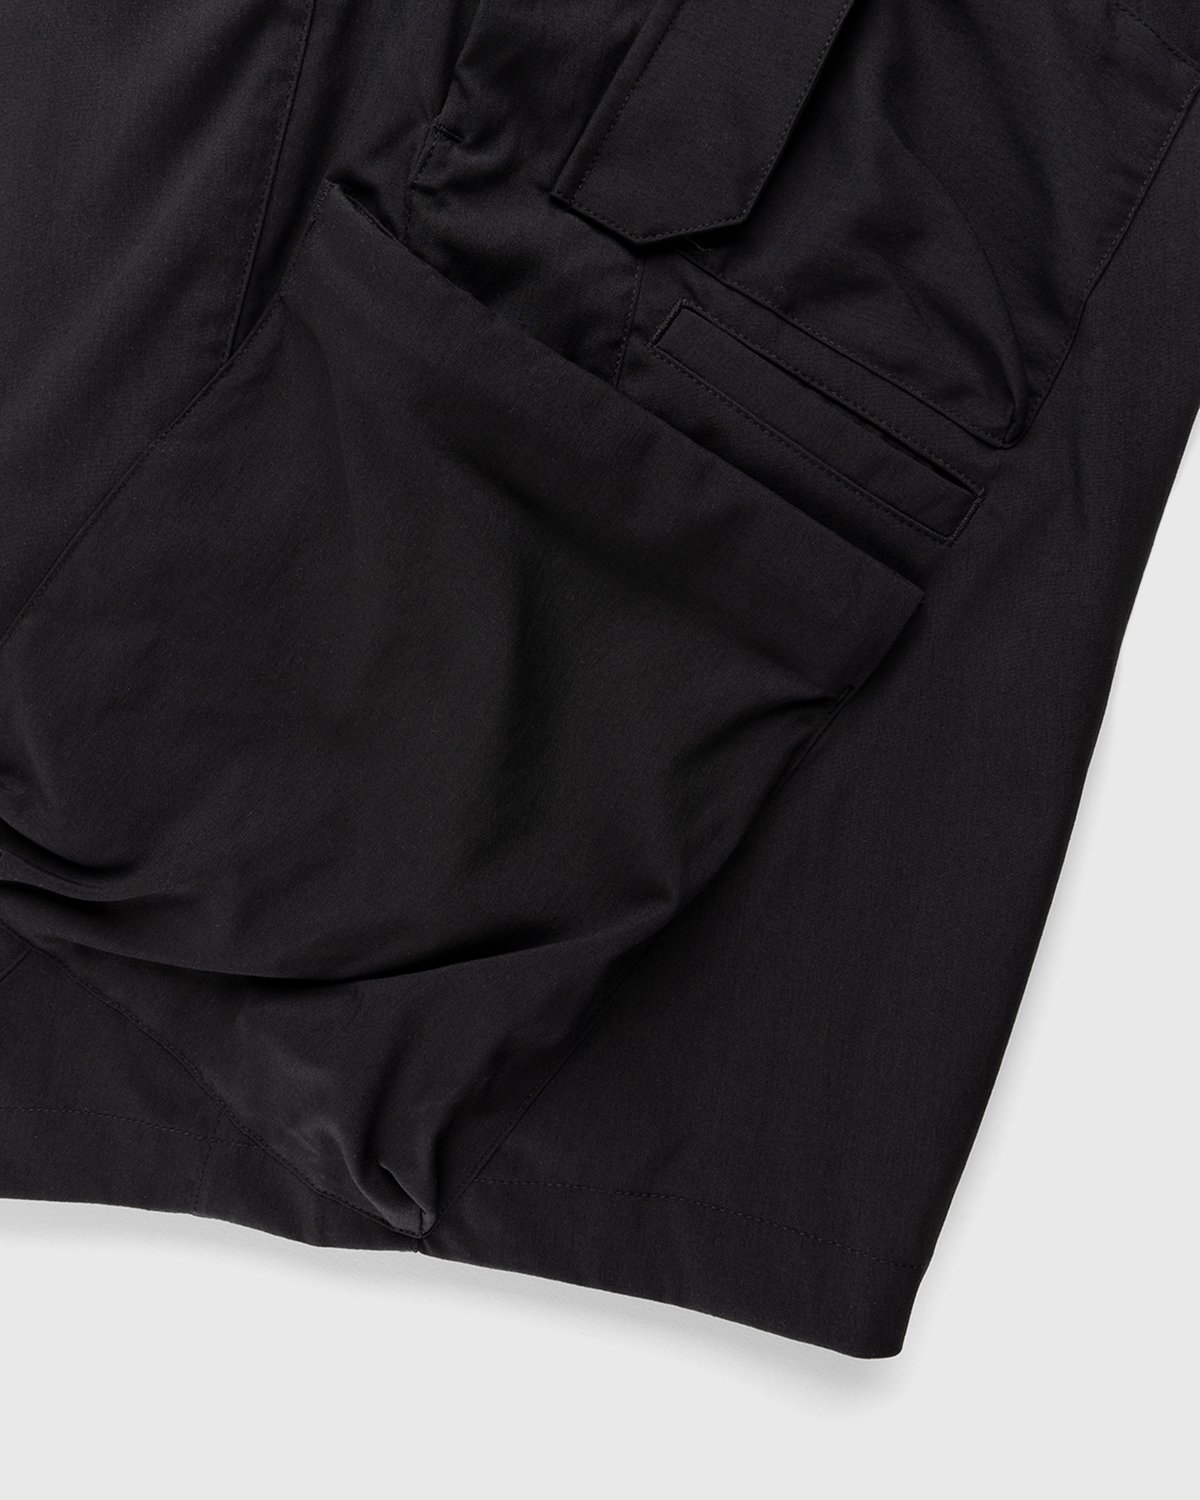 ACRONYM - SP29-M Cargo Shorts Black - Clothing - Black - Image 6